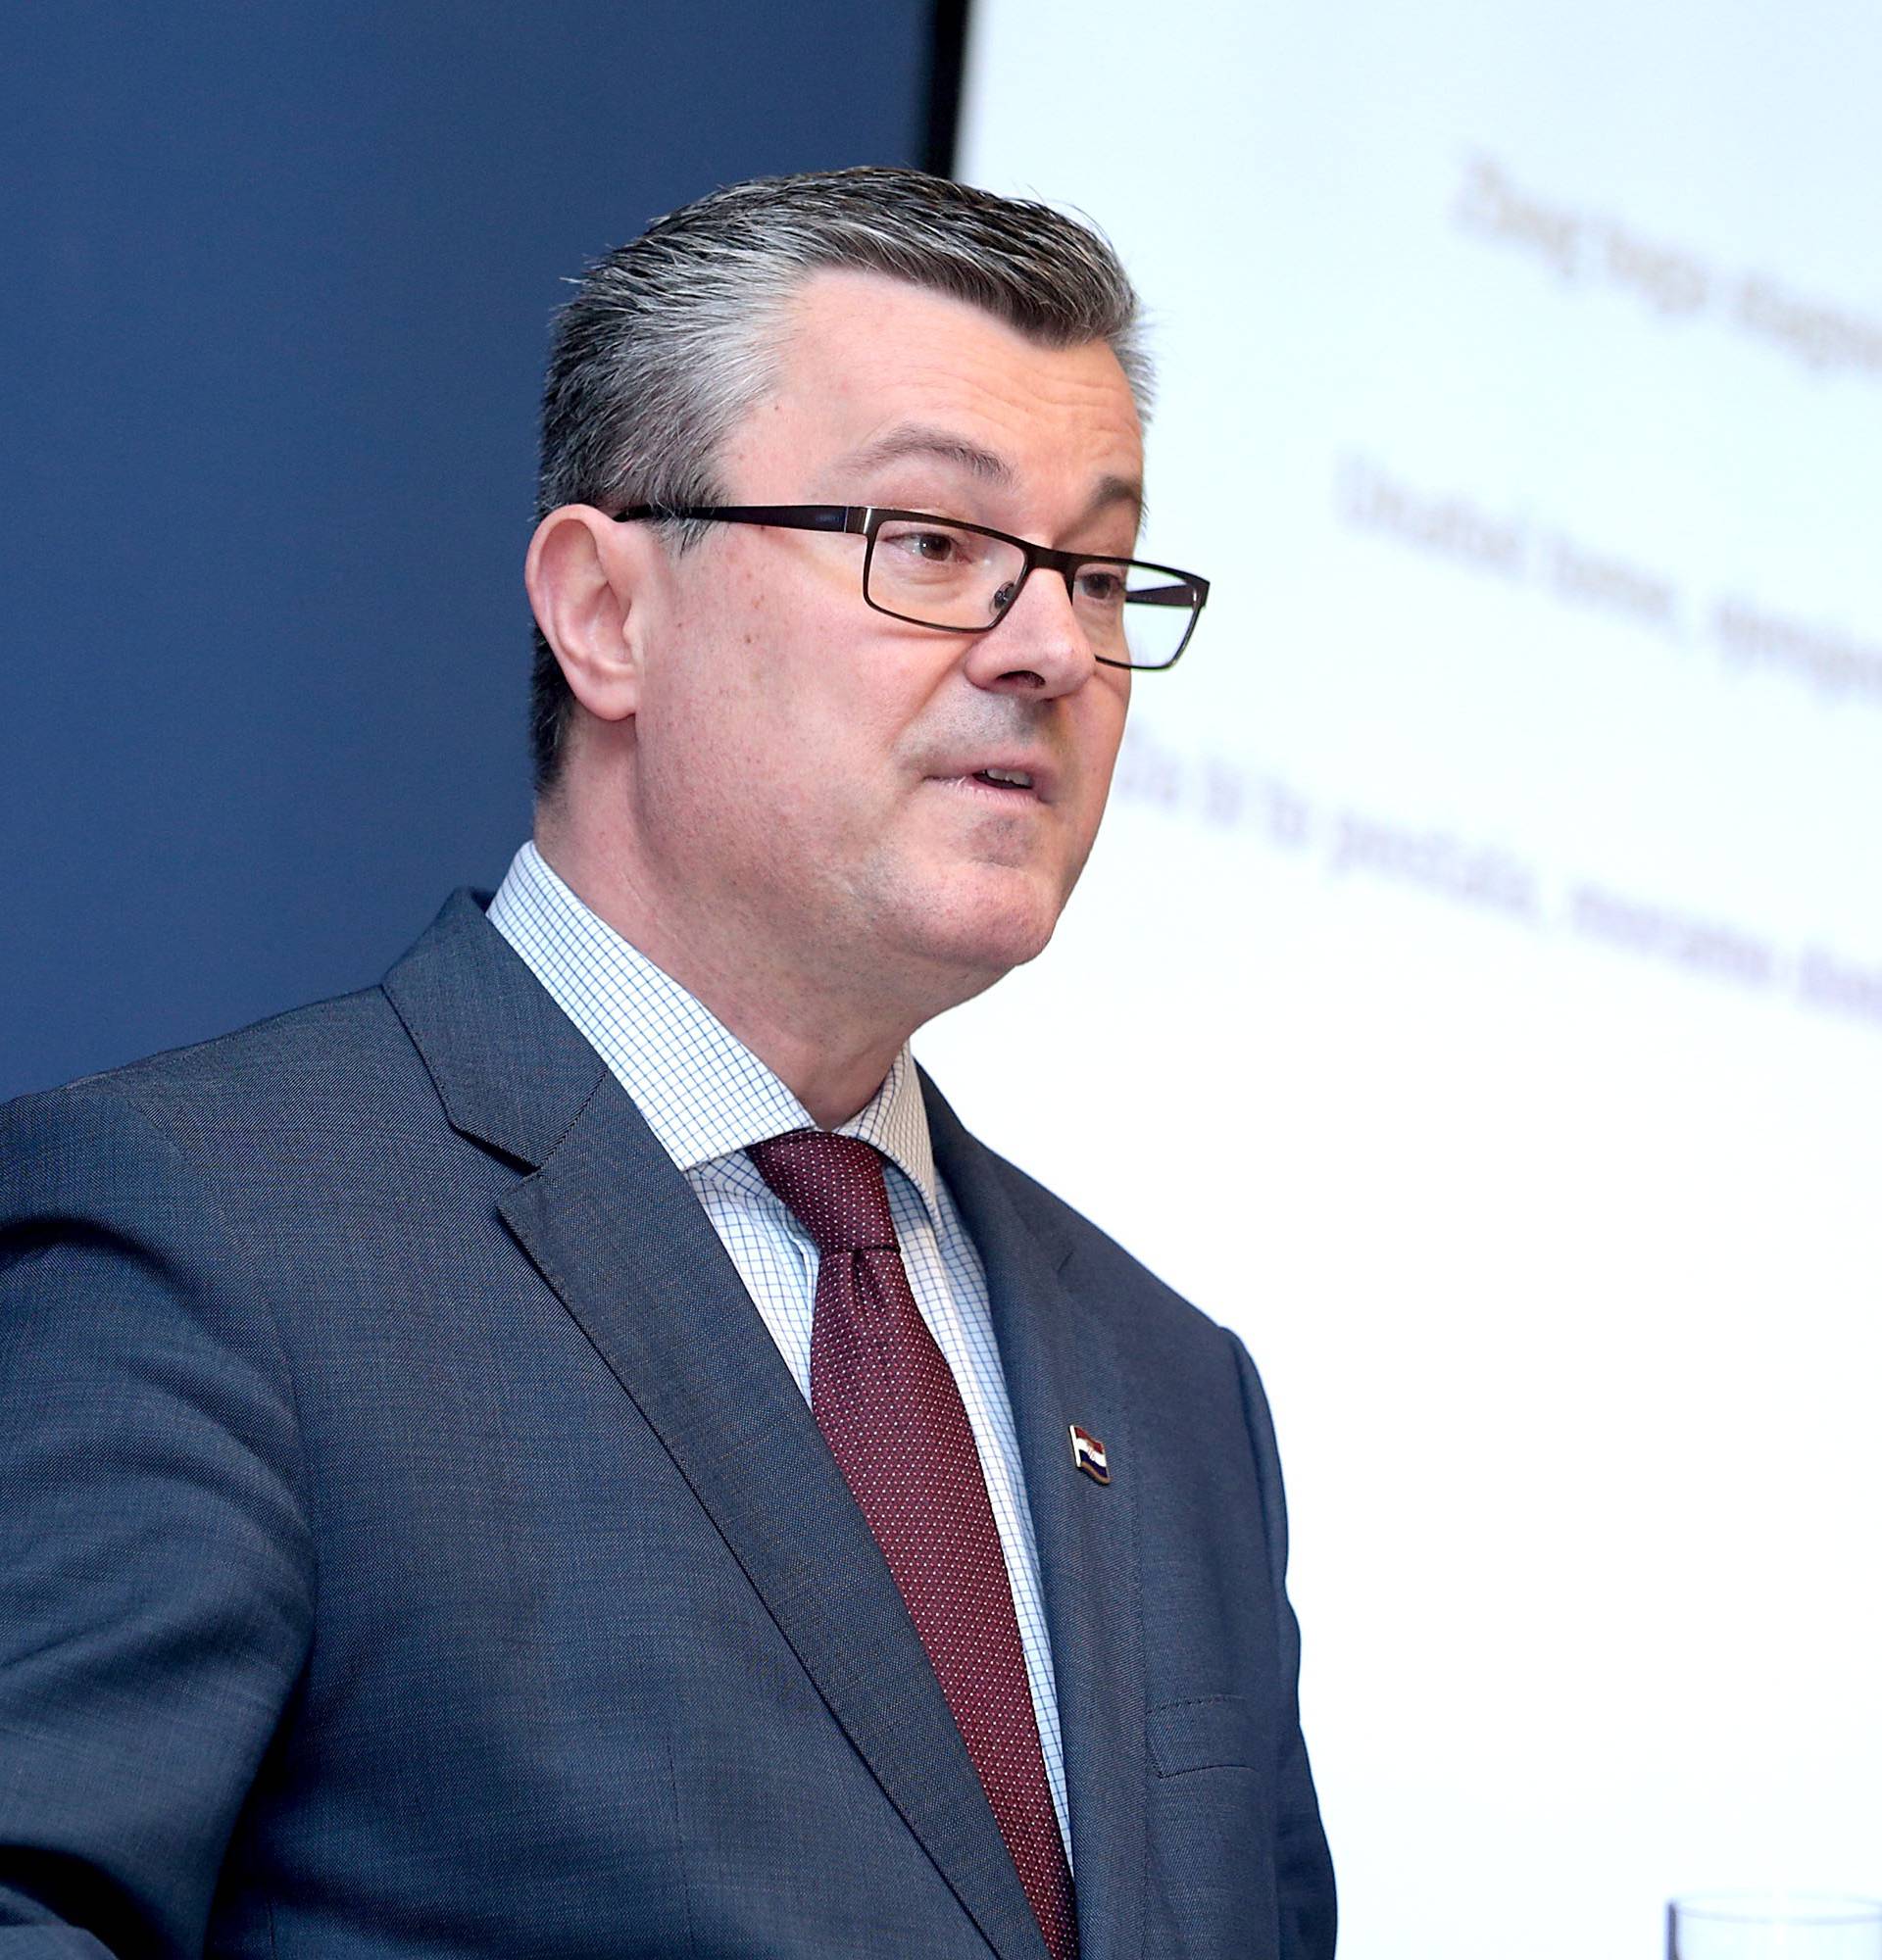 Premijer Orešković: Ove godine Vlada će slomiti taj javni dug